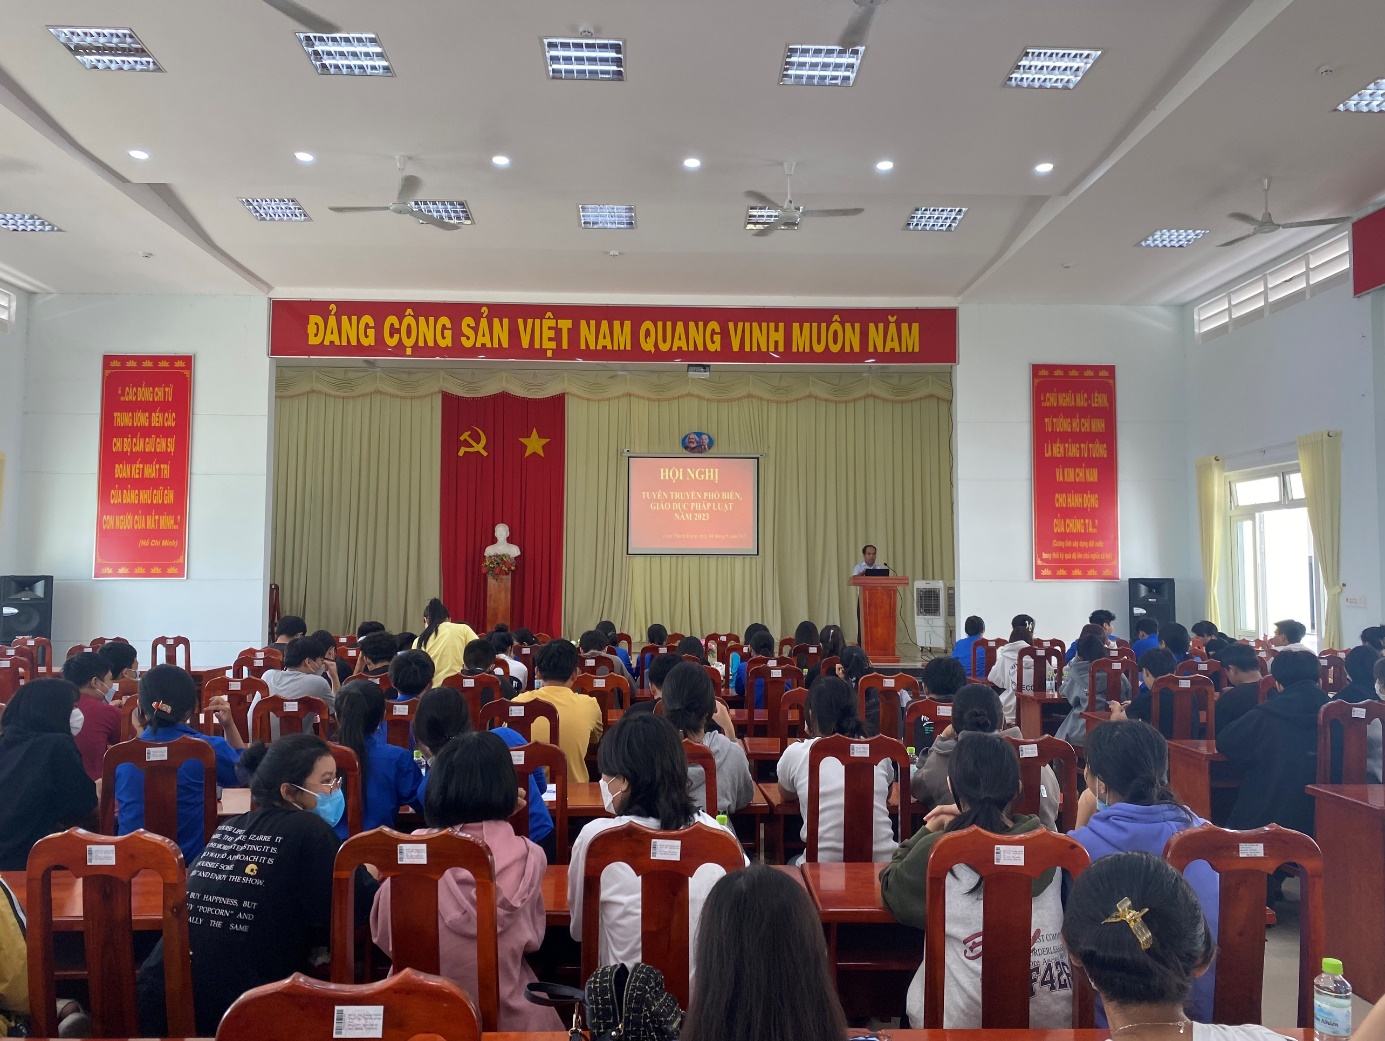 Ủy ban nhân dân phường Long Thành Trung - thị xã Hòa Thành tổ chức Hội nghị phổ biến giáo dục pháp luật cho đoàn viên trên địa bàn xã